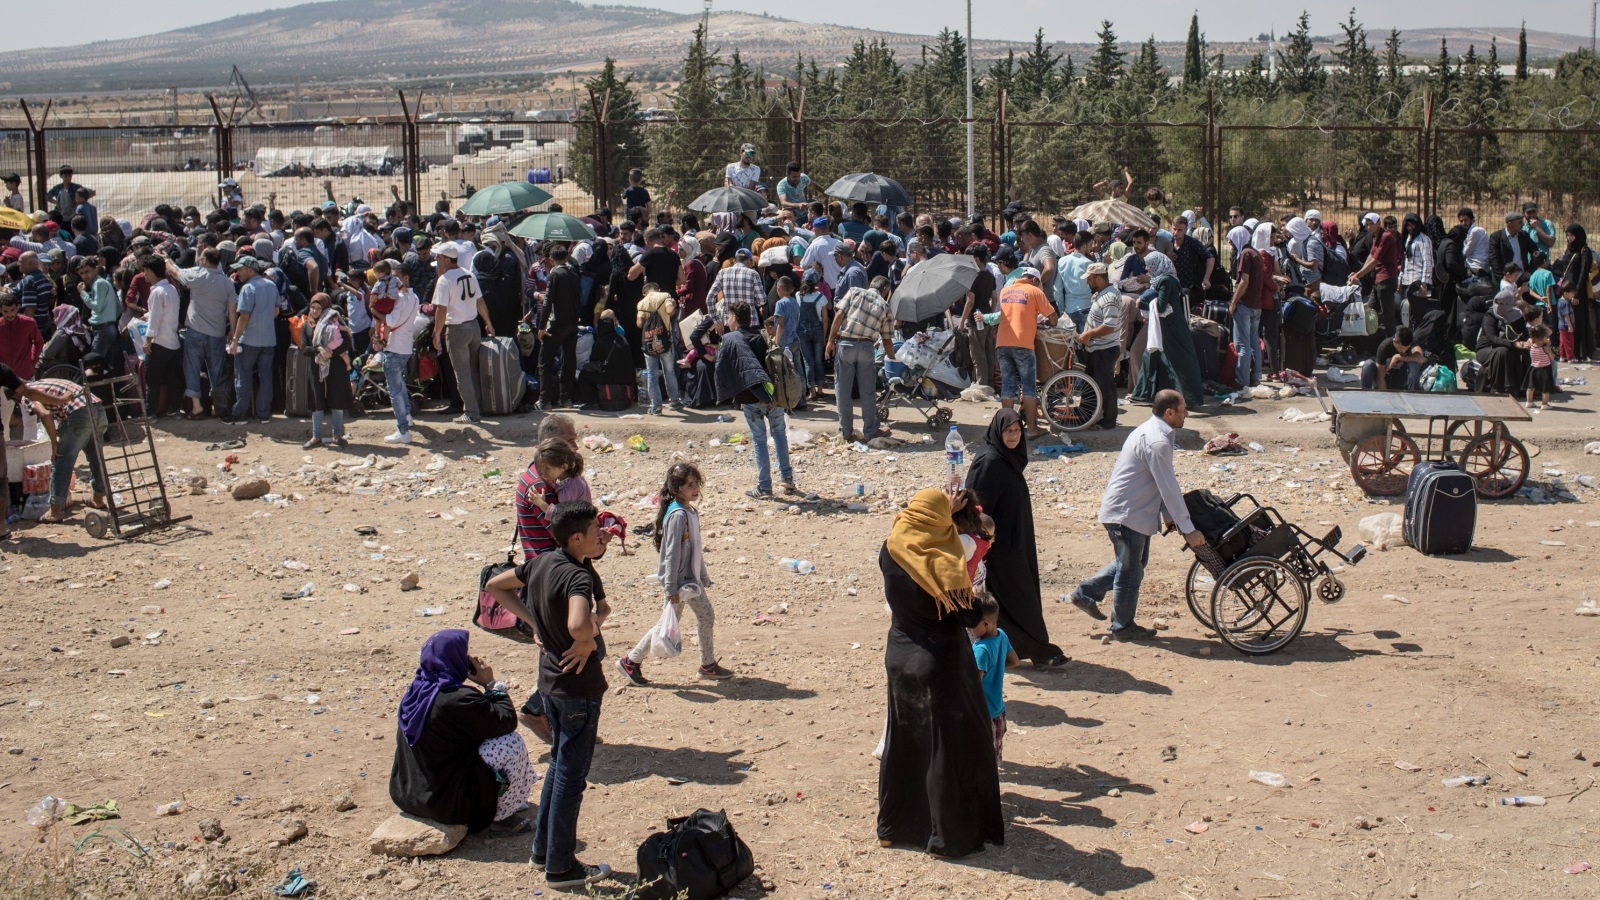 لم يتقدم المجتمع الدولي صوب اللاجئين ولم يتحمل مسؤولياته إن كان في لبنان أو في الأردن أو في تركيا، وأول المسؤوليات هي إزالة الأسباب التي بسببها هاجروا وغادروا واقتلعوا من أرضهم